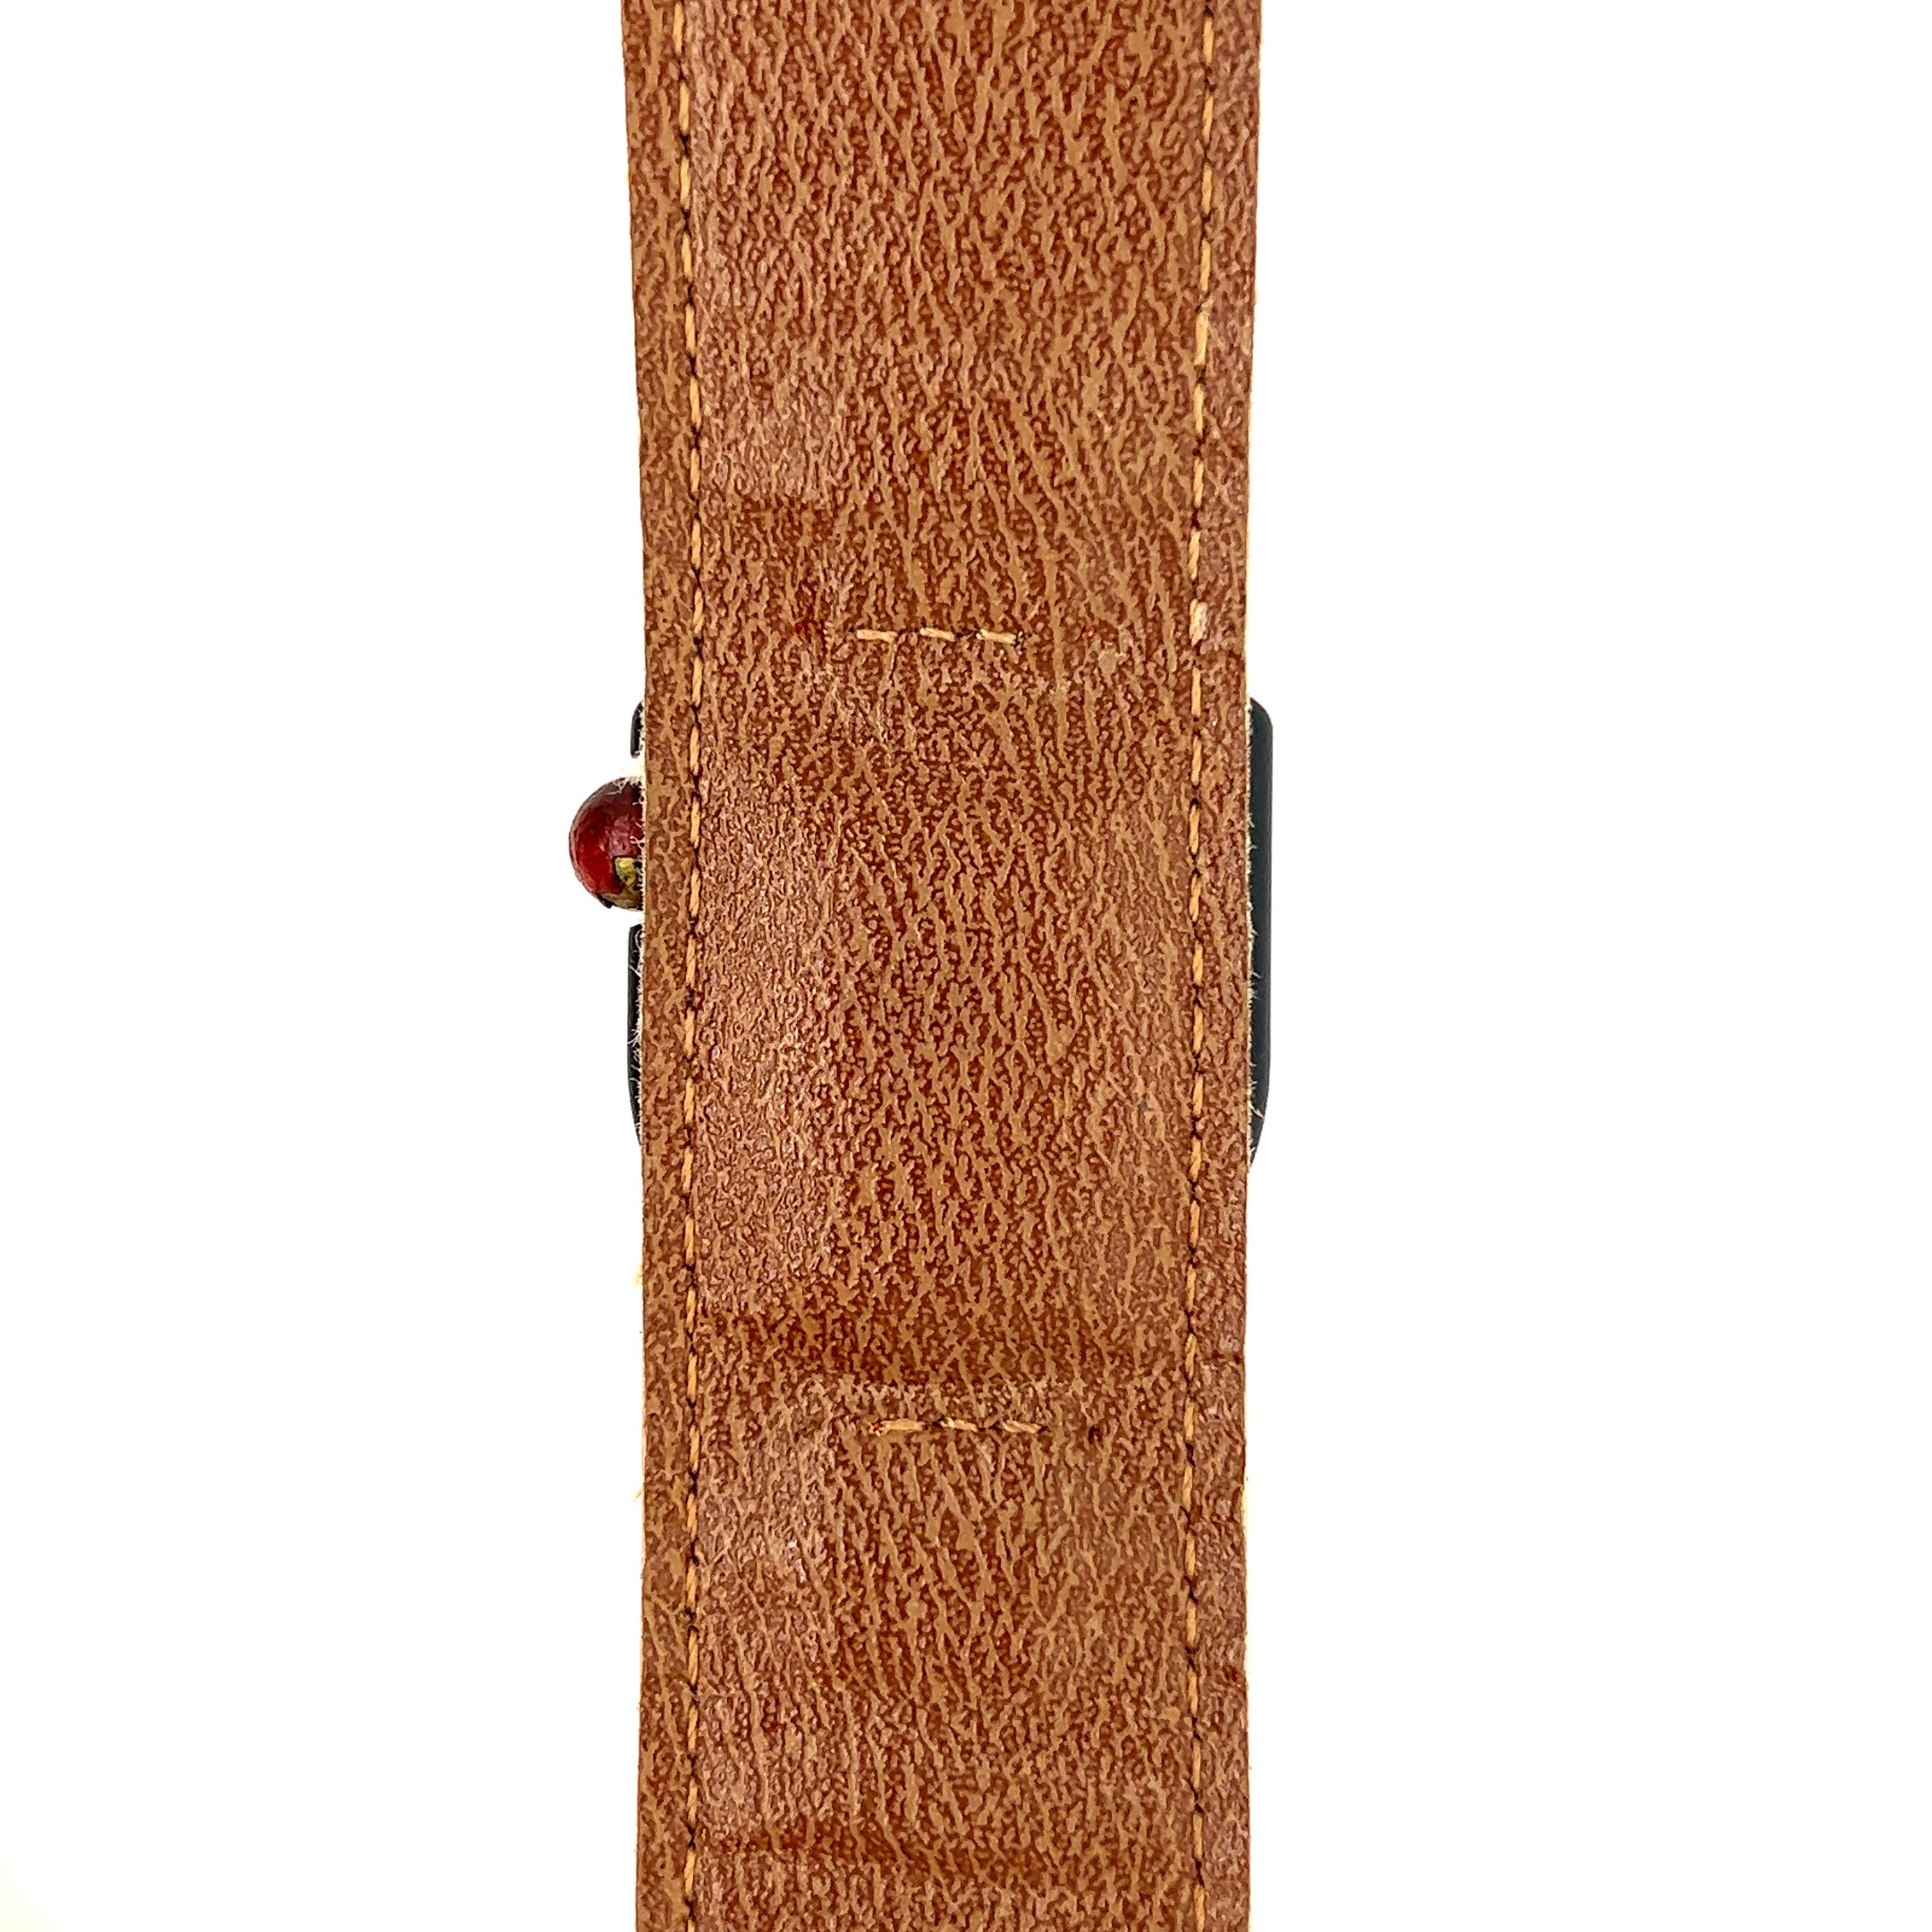 La montre pour femme LIP avec bracelet orange et boîtier en métal noir est une pièce vintage de 1974 conçue par Roger Tallon. Dotée d'un bracelet en cuir orange, d'un mouvement mécanique T13 de haute qualité et d'une forme asymétrique emblématique,